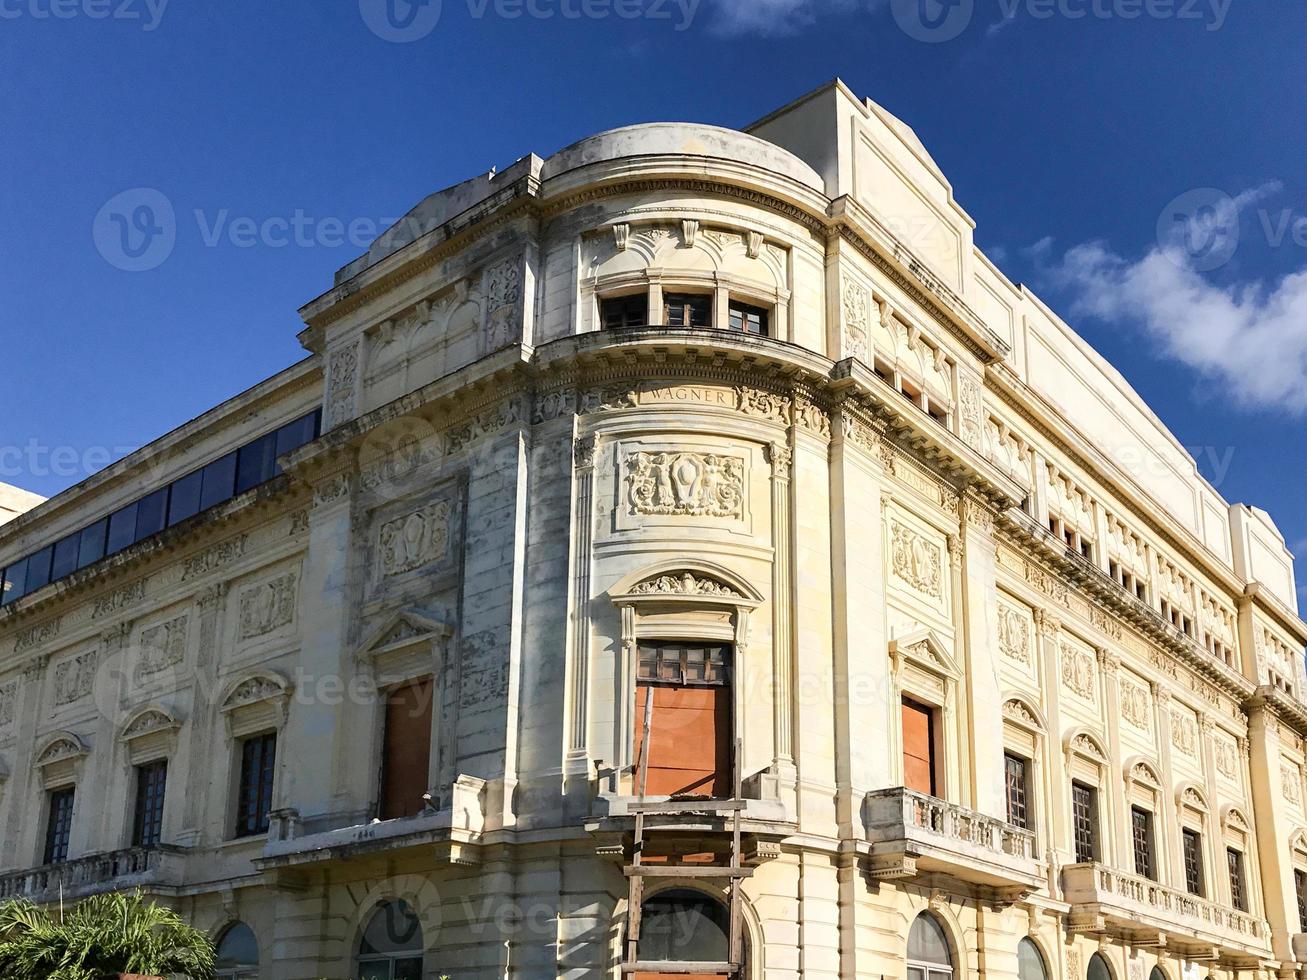 de amadeo roldan teater är en teater i Havanna, kuba byggd i 1929. foto